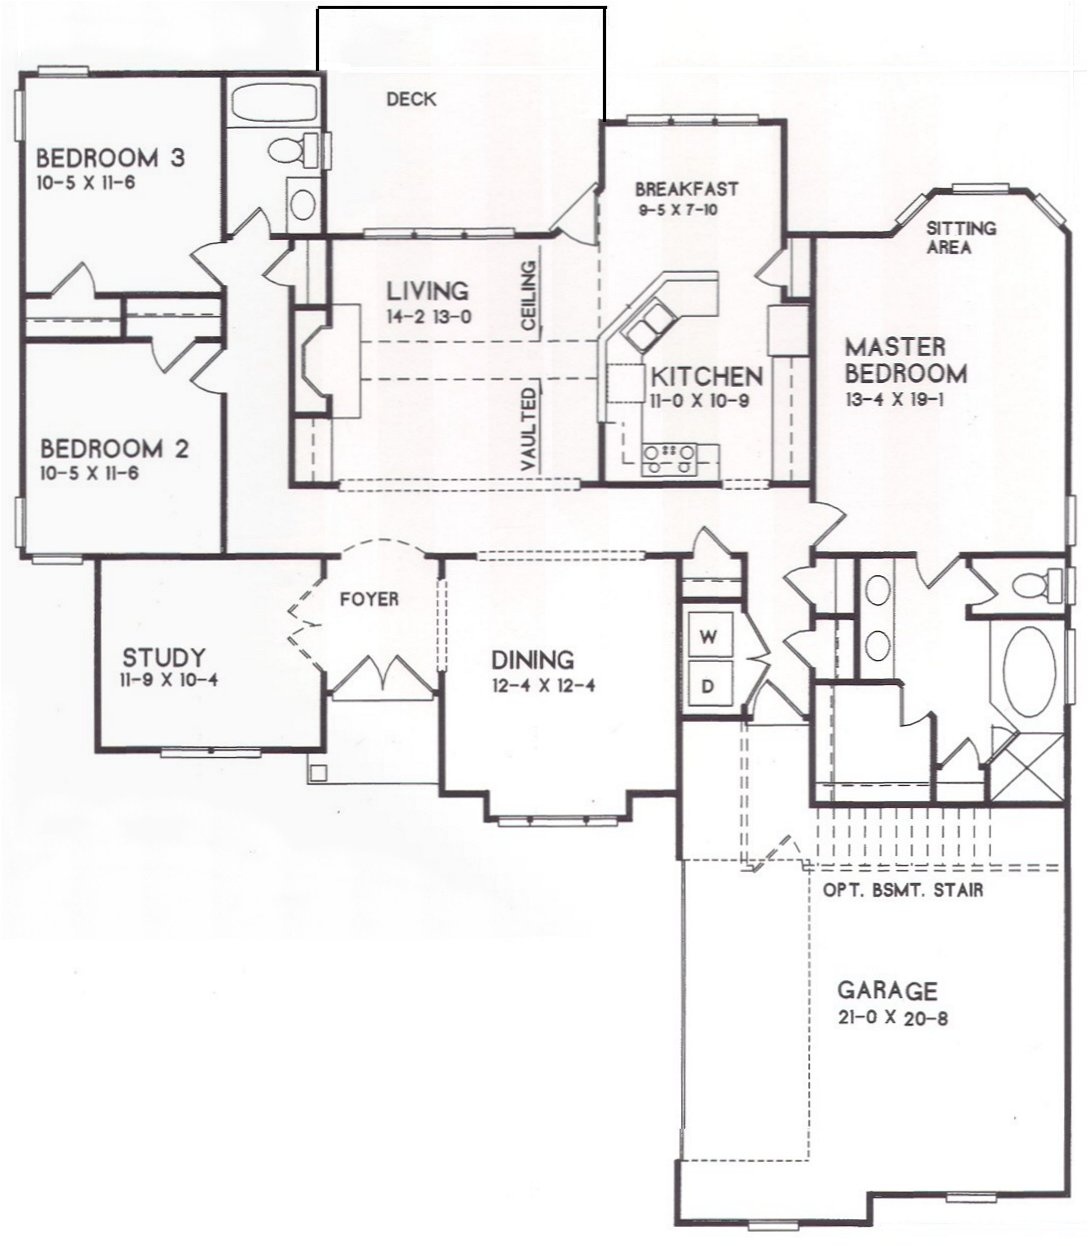 17-15 floor plan